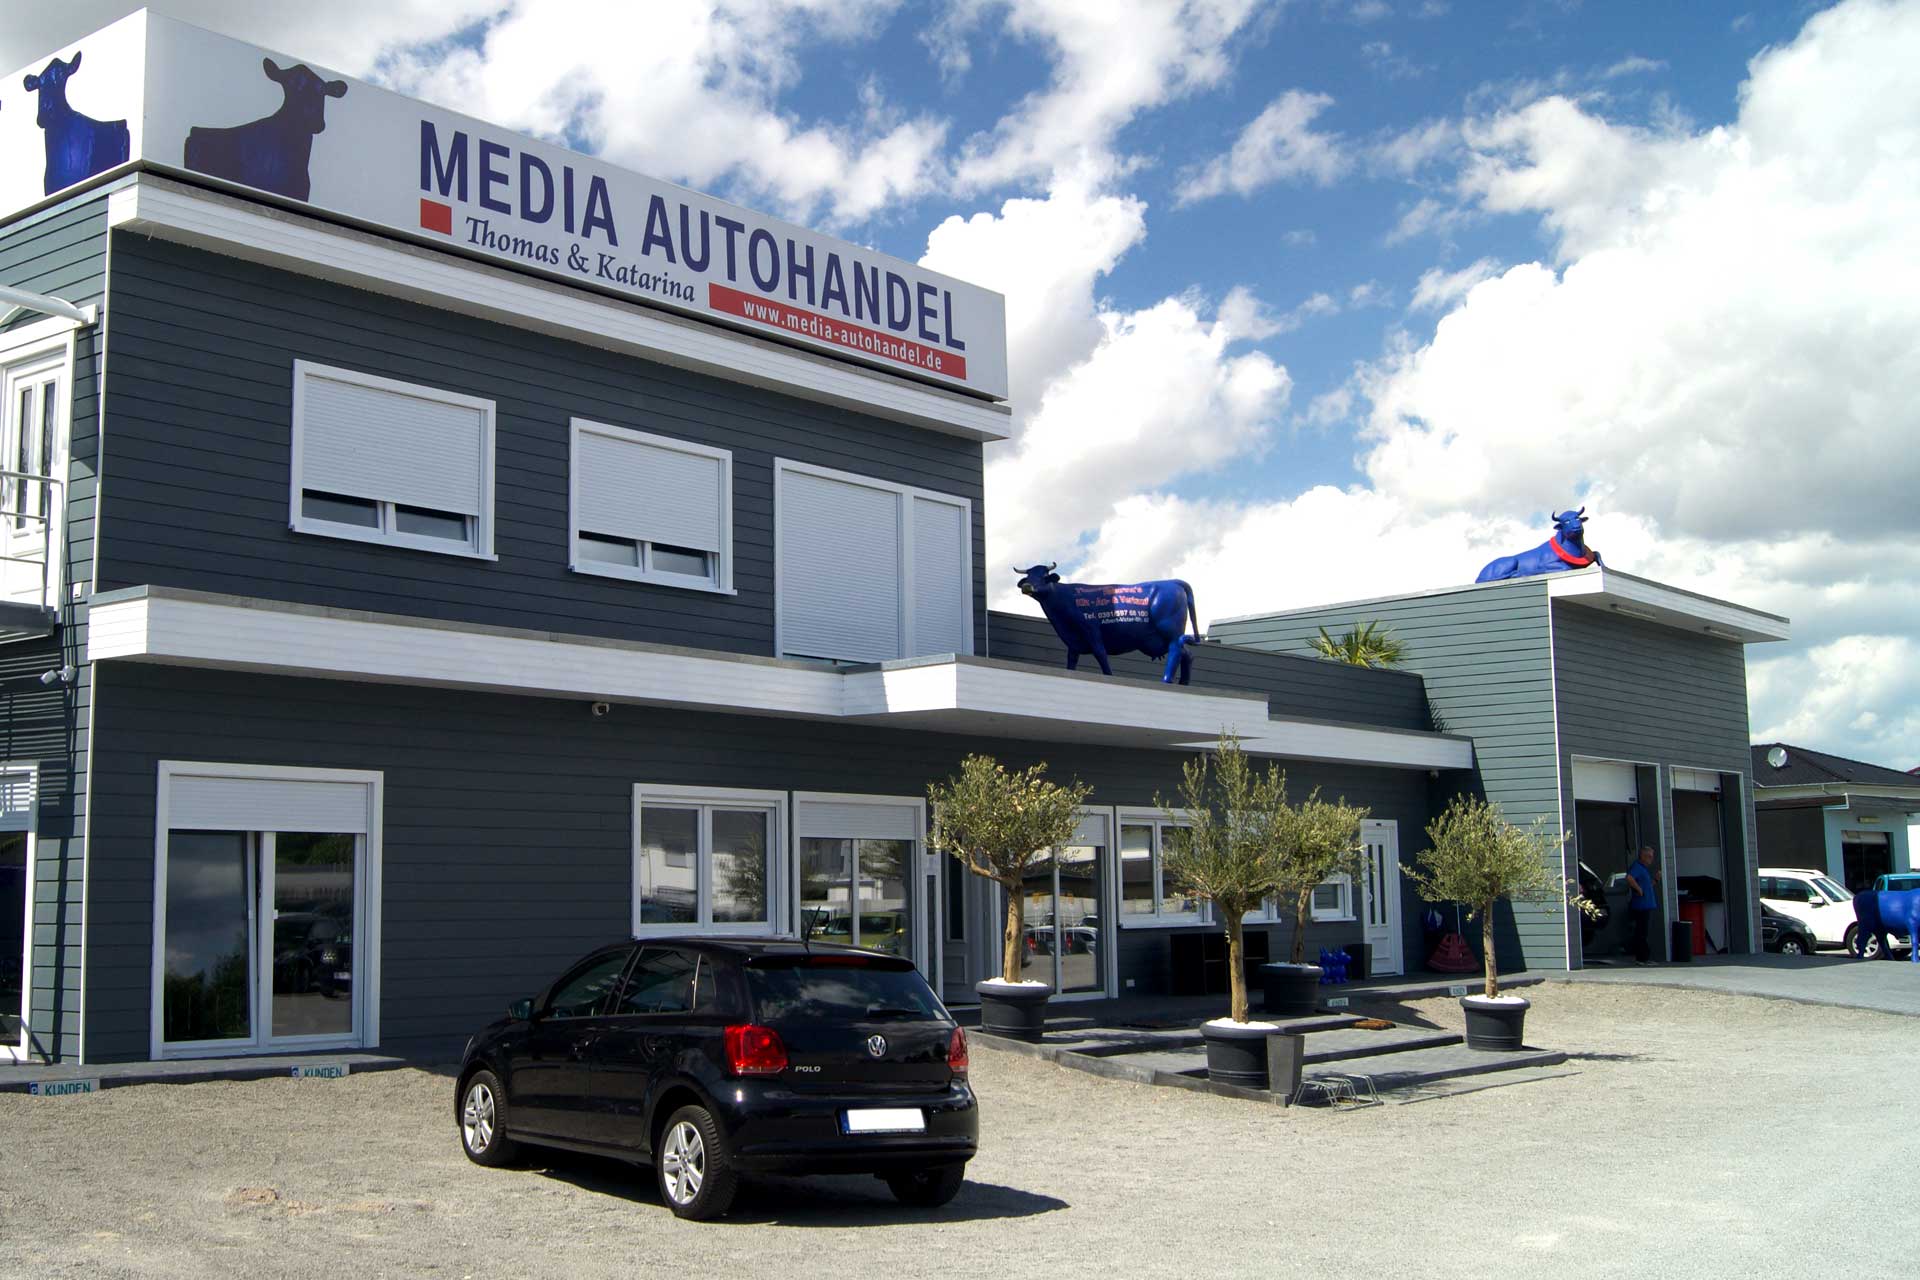 KFZ-Finanzierung in Magdeburg Media_Autohandel_byStev00234_Ausschnitt_bearb_WEB